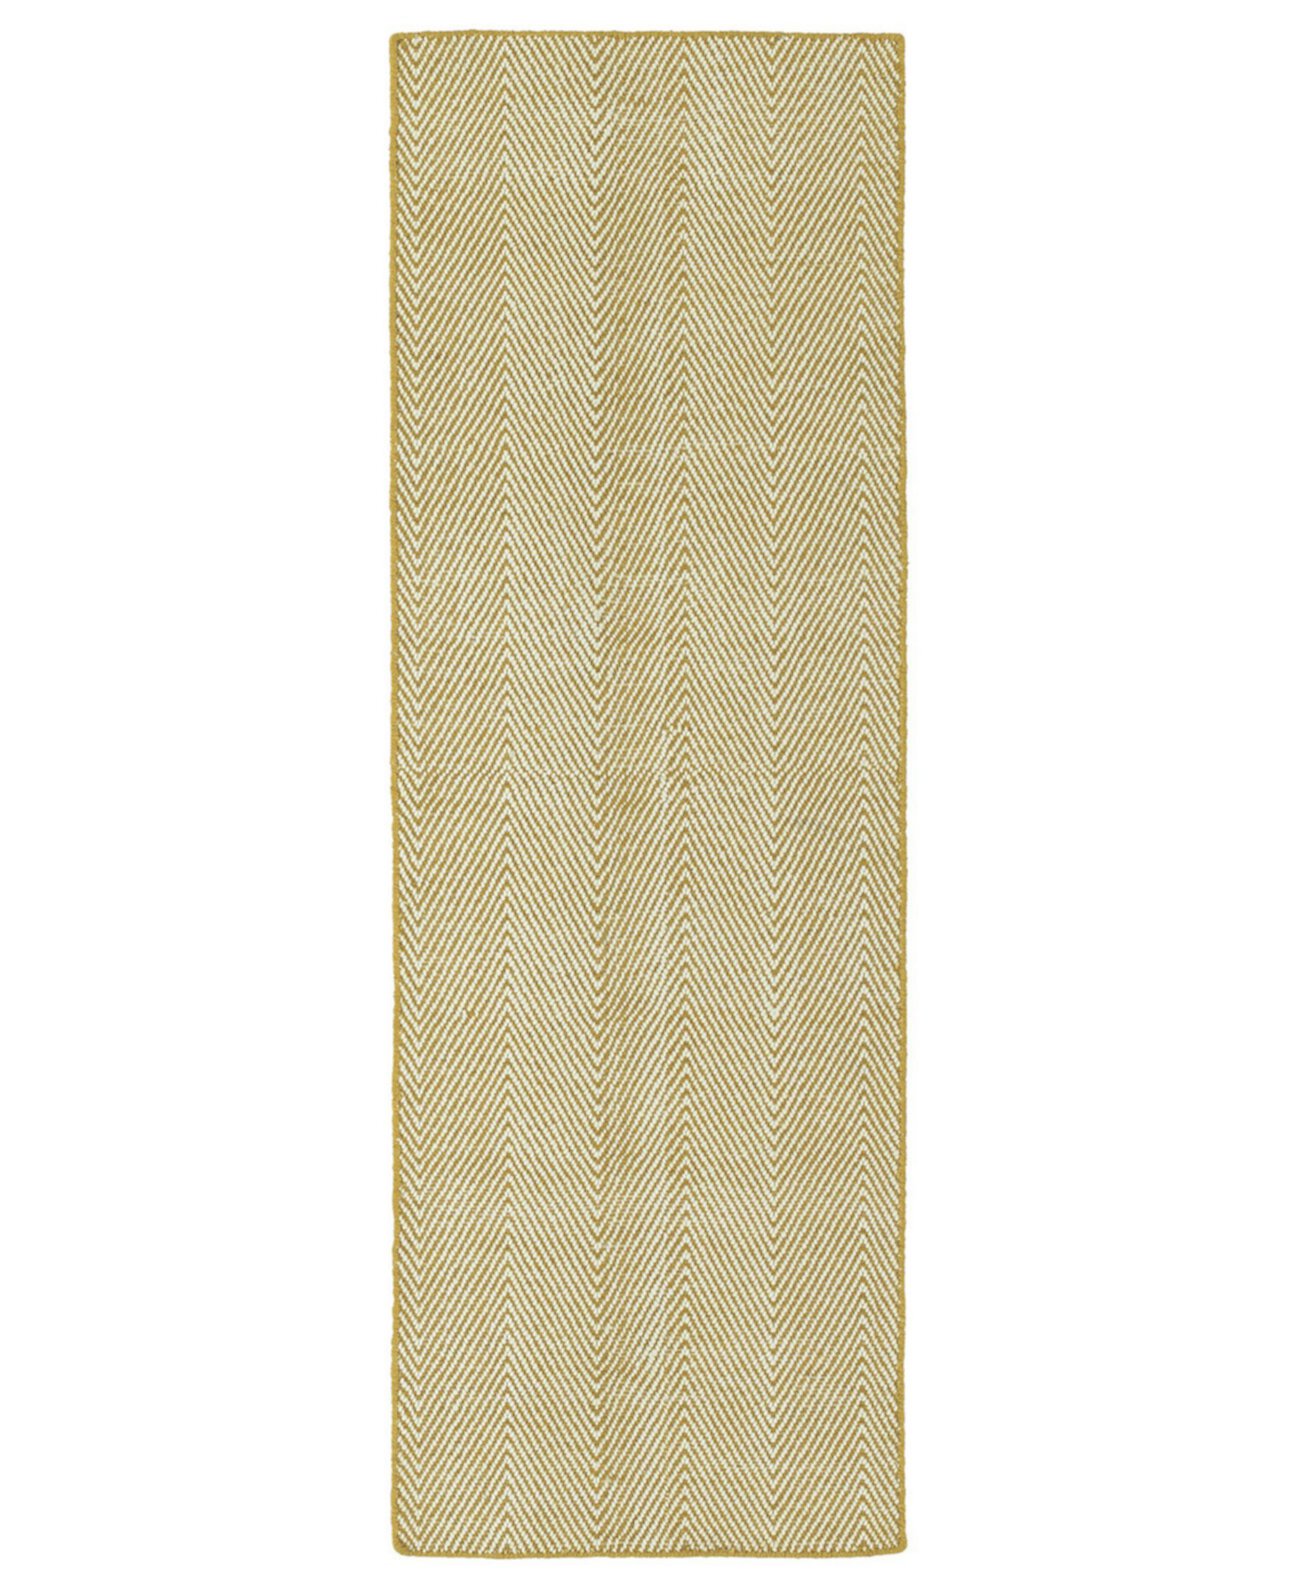 Ziggy ZIG01-05 Золотой коврик для беговой дорожки размером 2 x 6 футов Kaleen